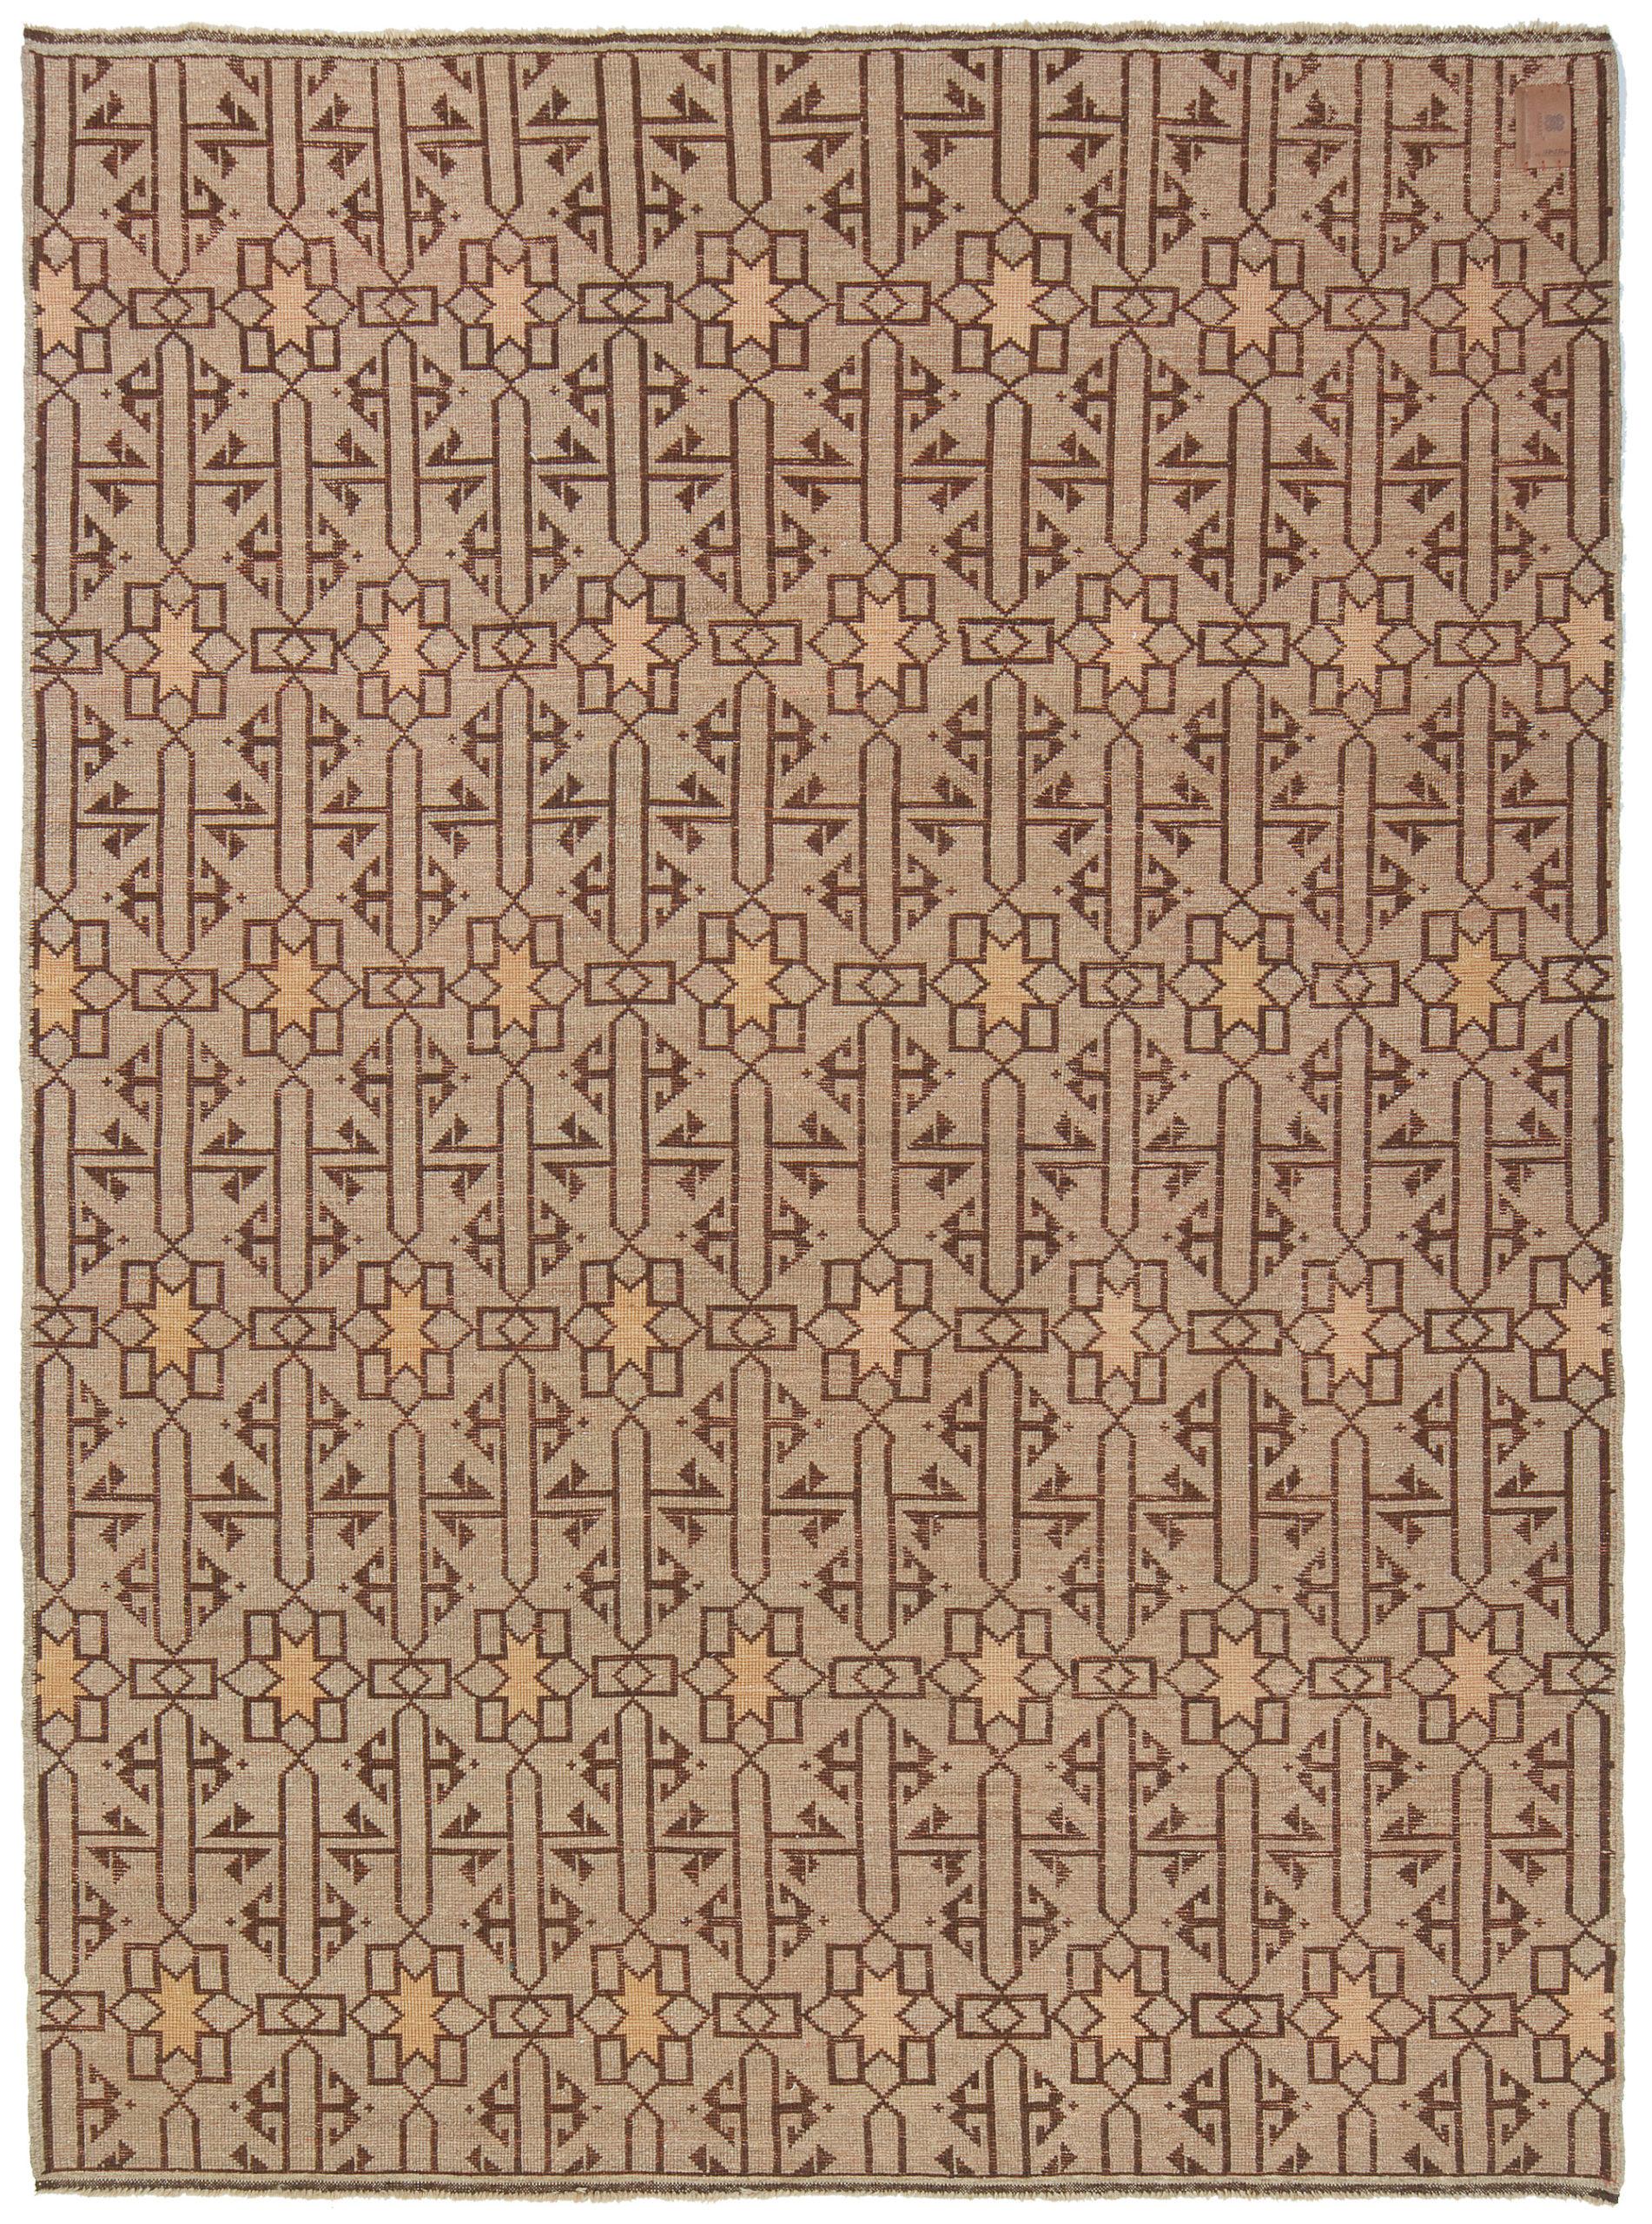 Die Quelle des Teppichs stammt aus dem Buch Orient Stars Collection, Anatolian Tribal Rugs 1050-1750, Michael Franses, Hali Publications Ltd, 2021 fig.23. Dieser Teppich aus dem 13. Jahrhundert stammt wahrscheinlich aus der Region Konya,